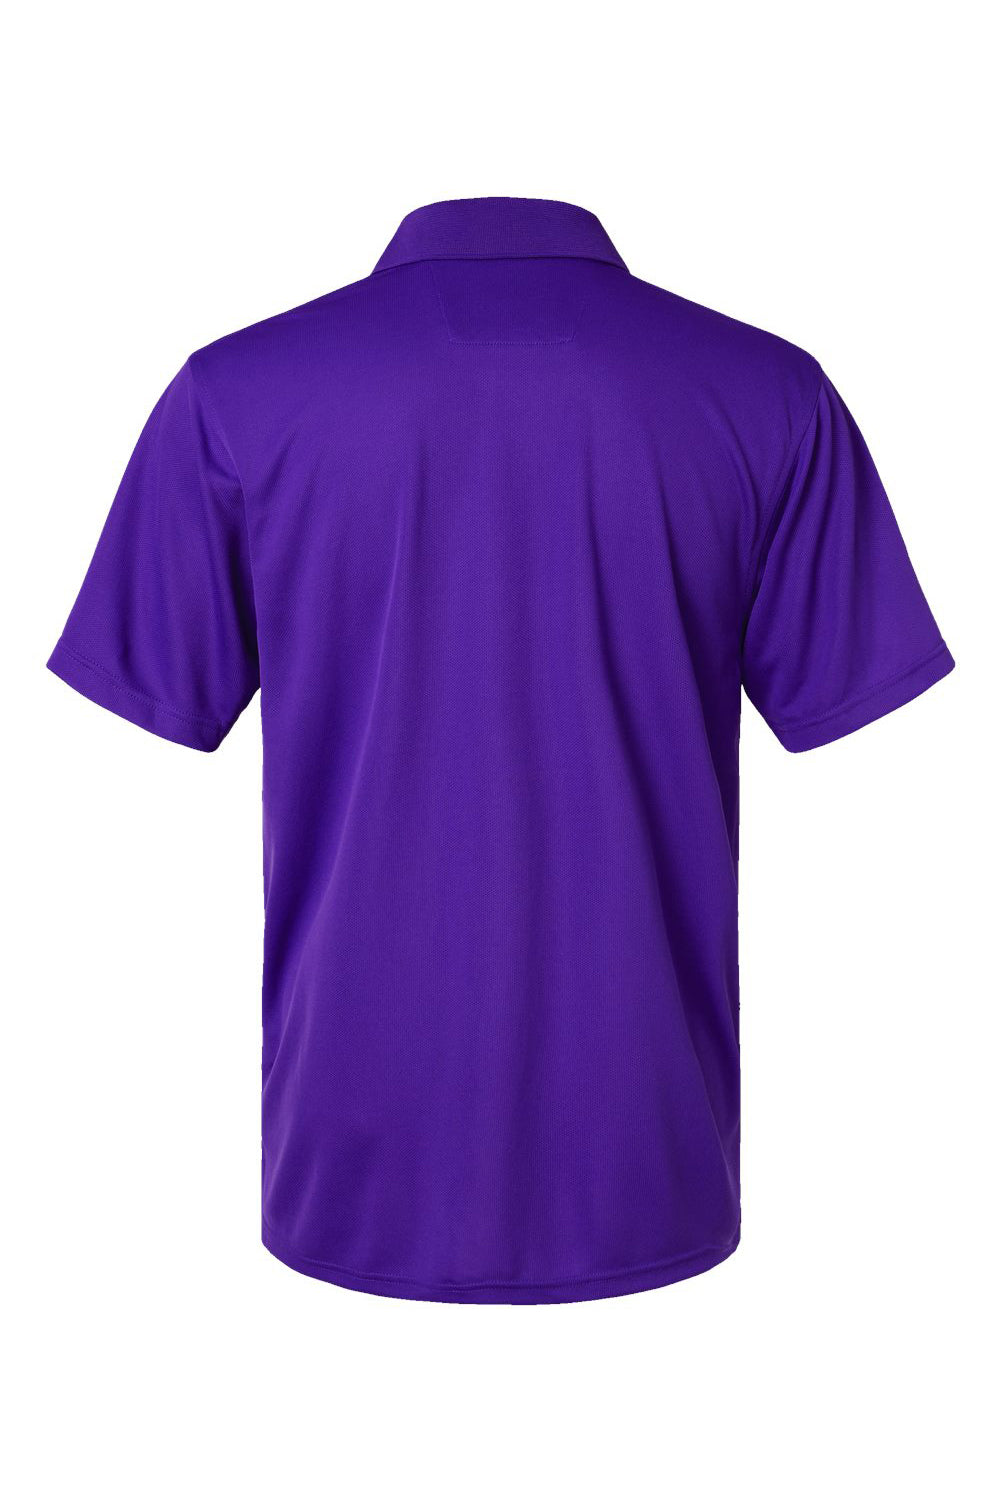 Paragon 100 Mens Saratoga Performance Mini Mesh Short Sleeve Polo Shirt Purple Flat Back